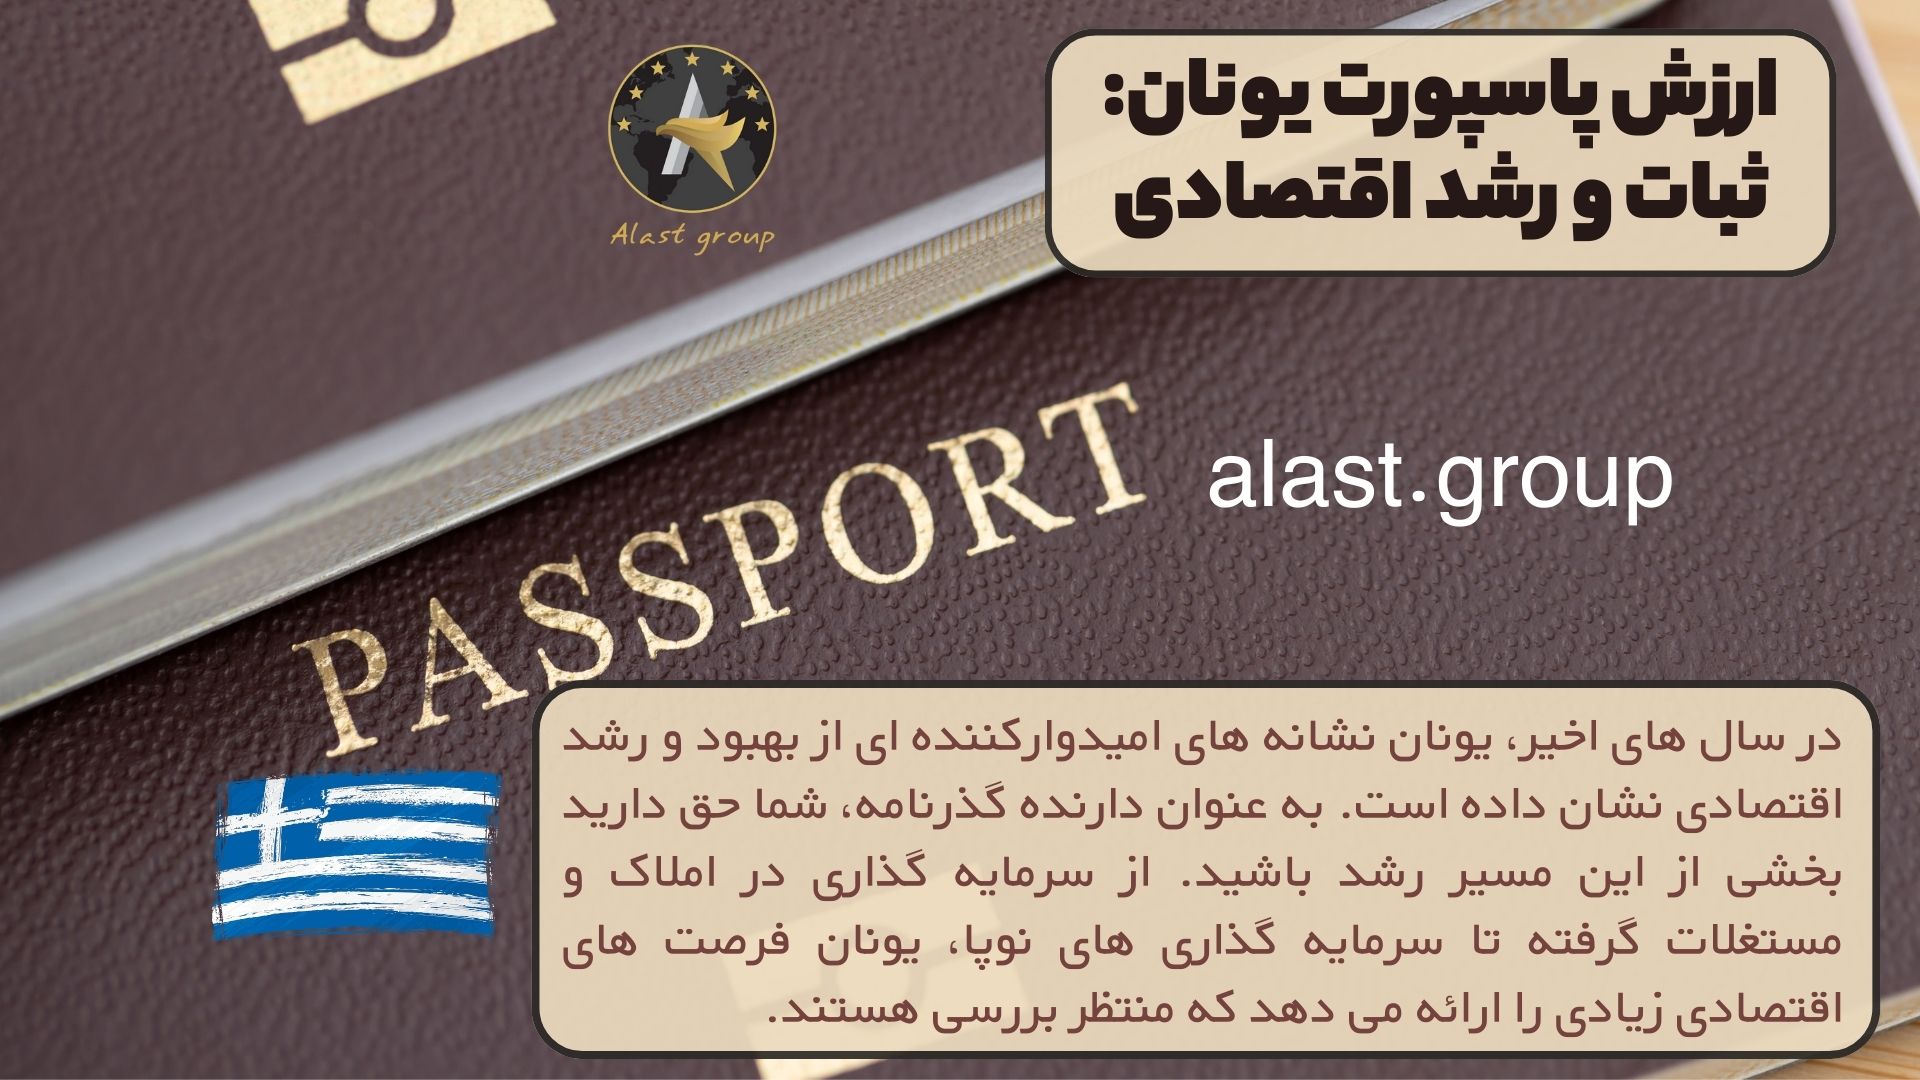 ارزش پاسپورت یونان: ثبات و رشد اقتصادی